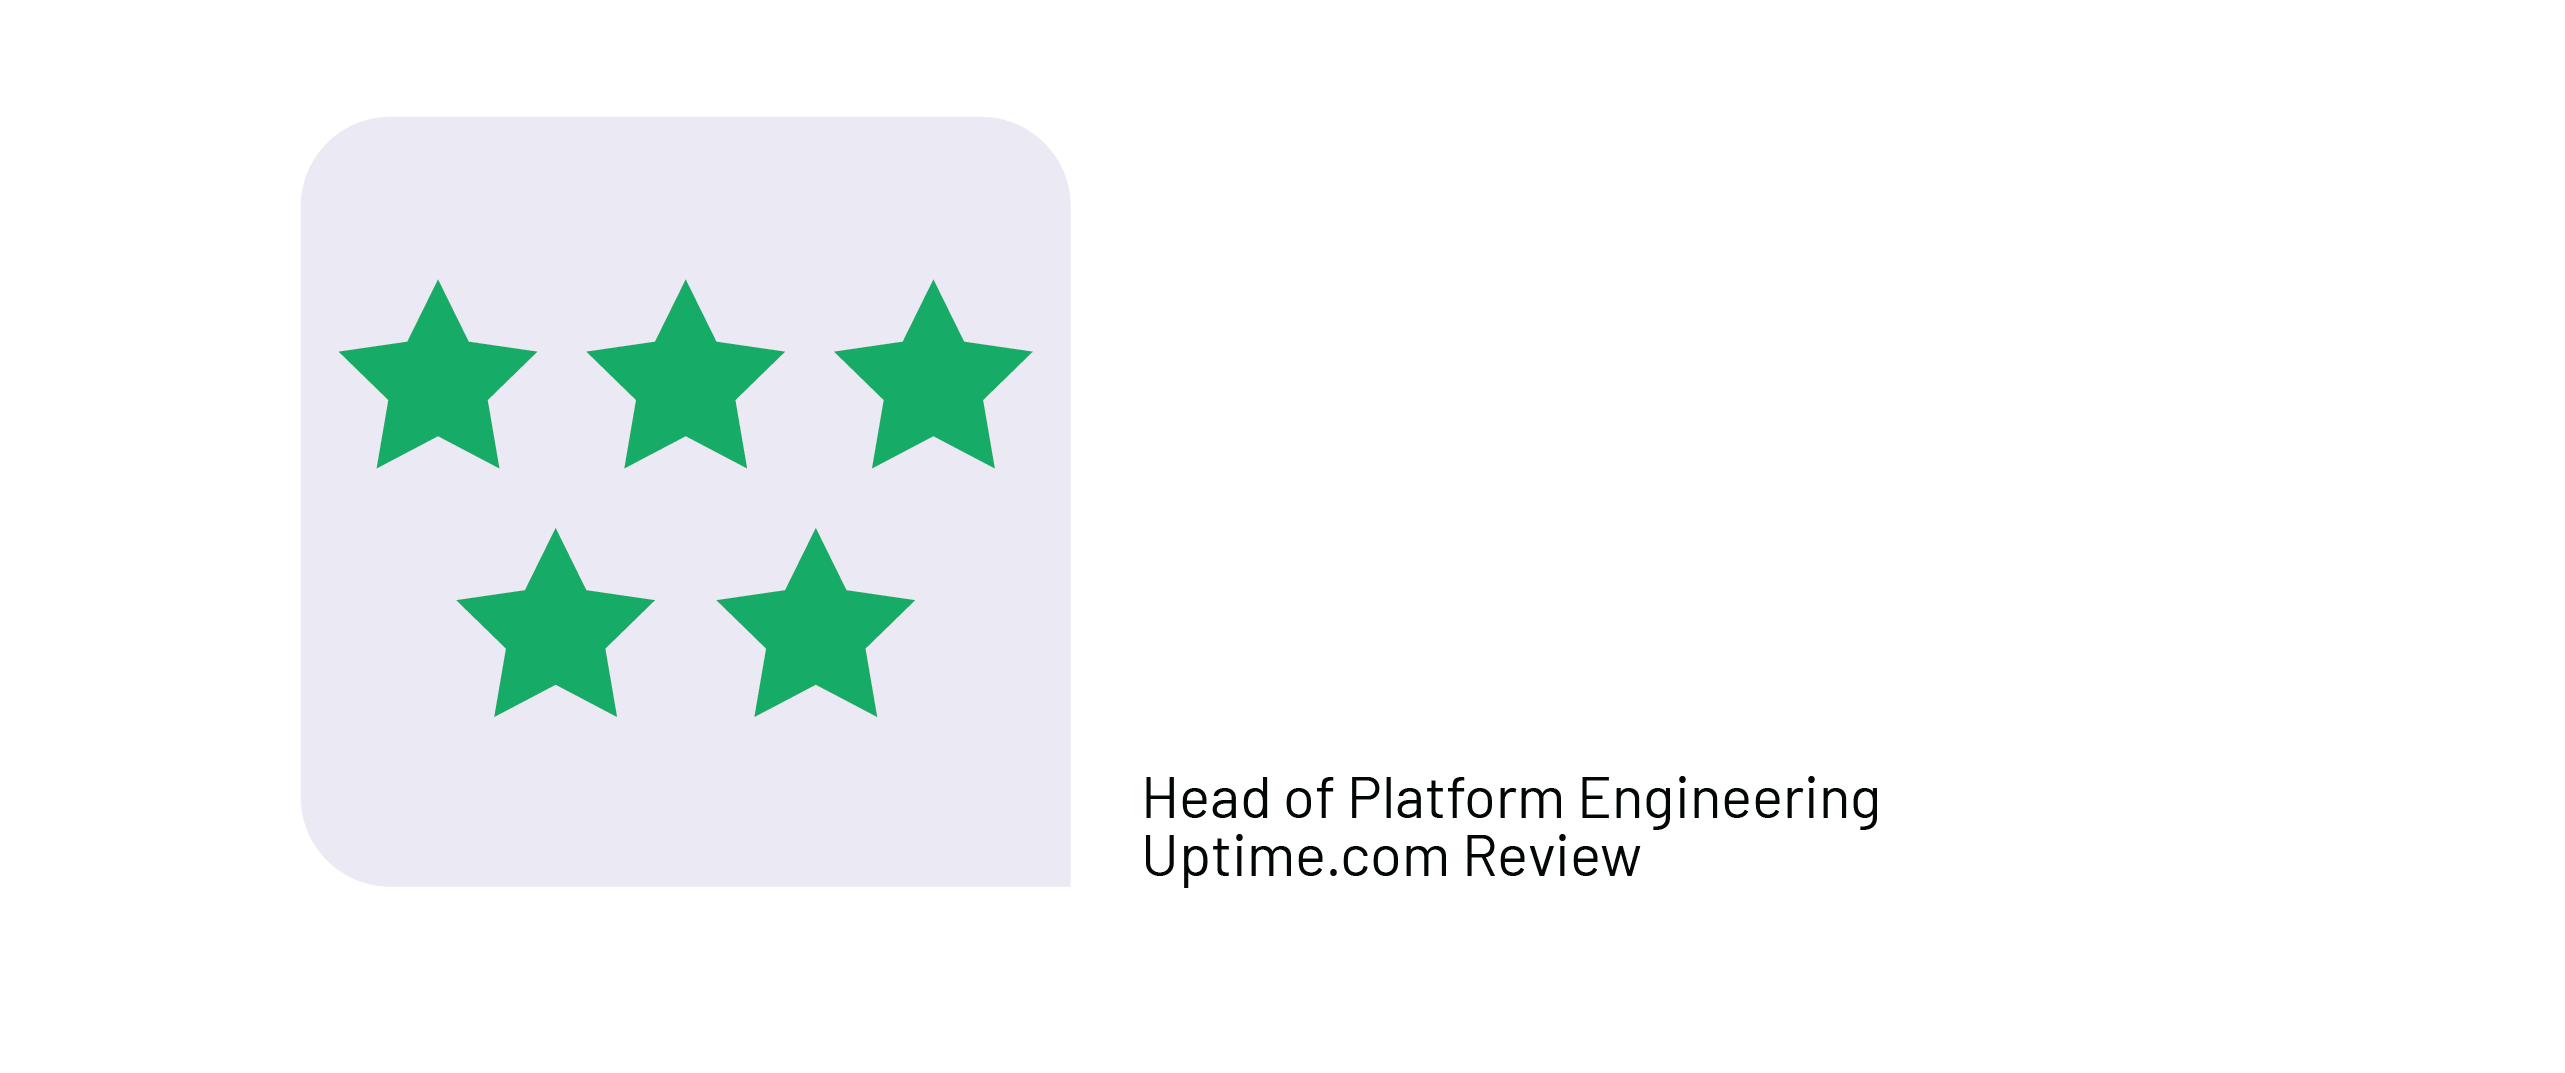 Fabian Uptime.com Review